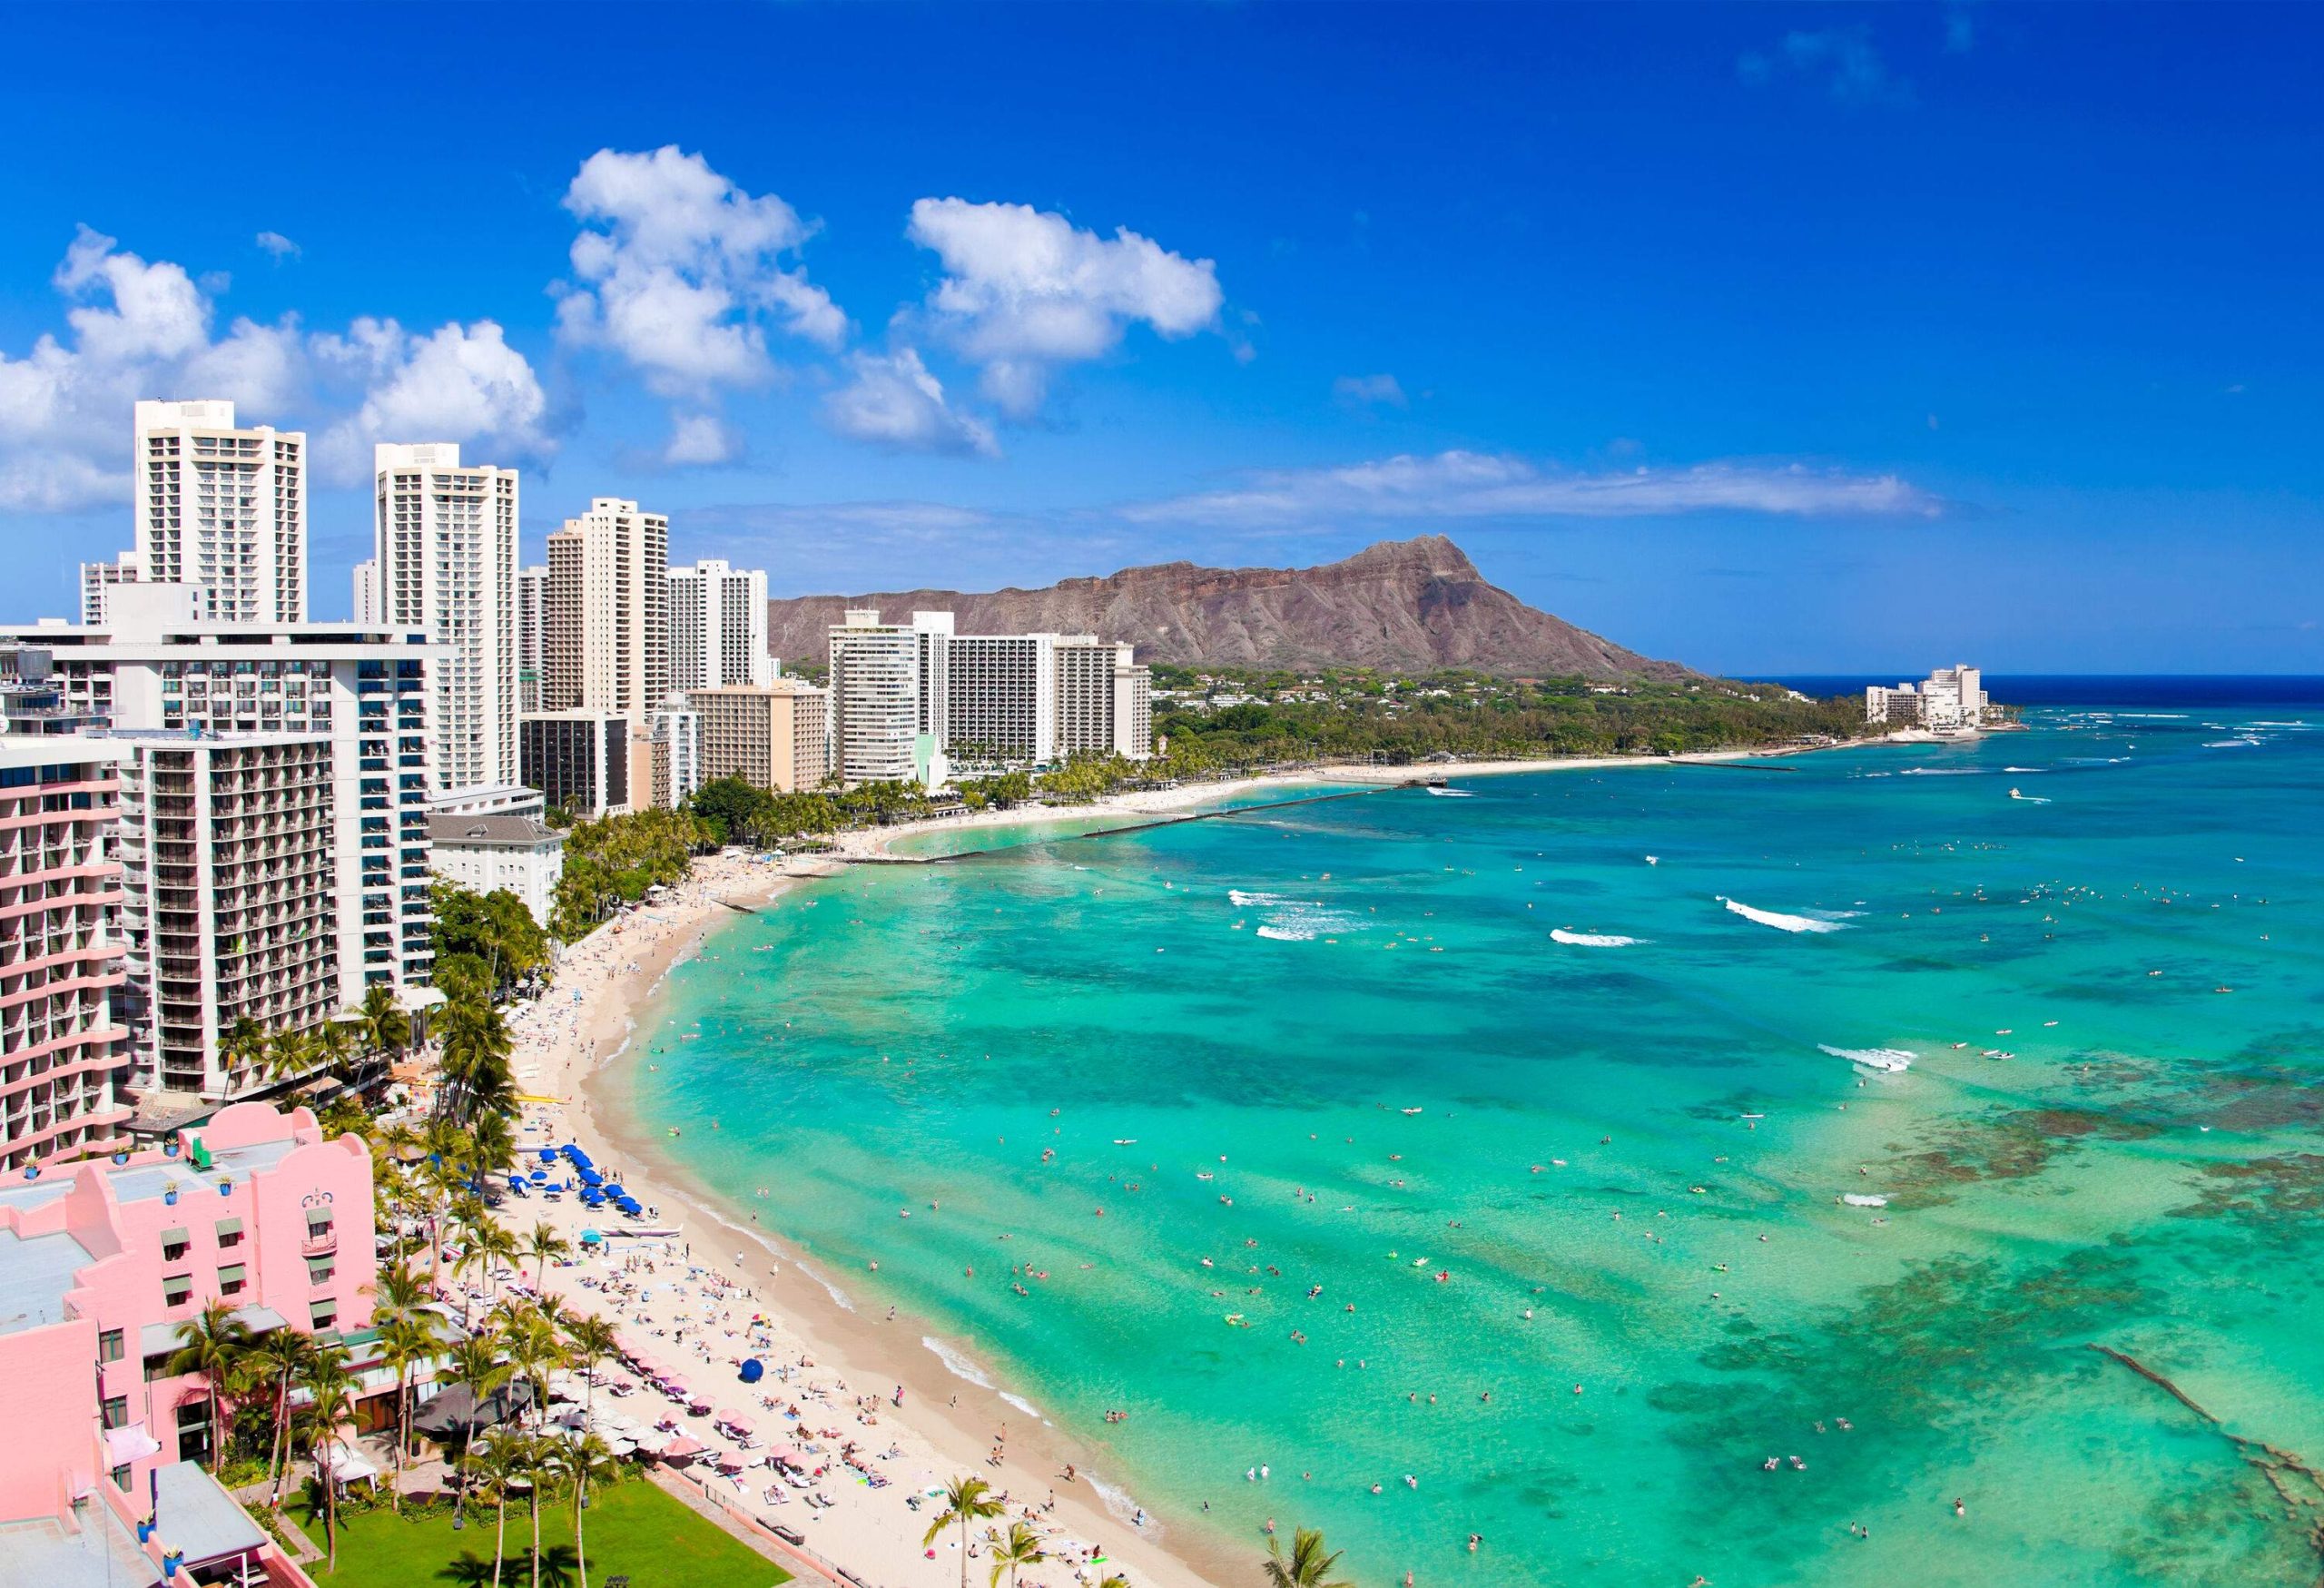 Honolulu hawaii resort waikiki beach in afternoon sun.